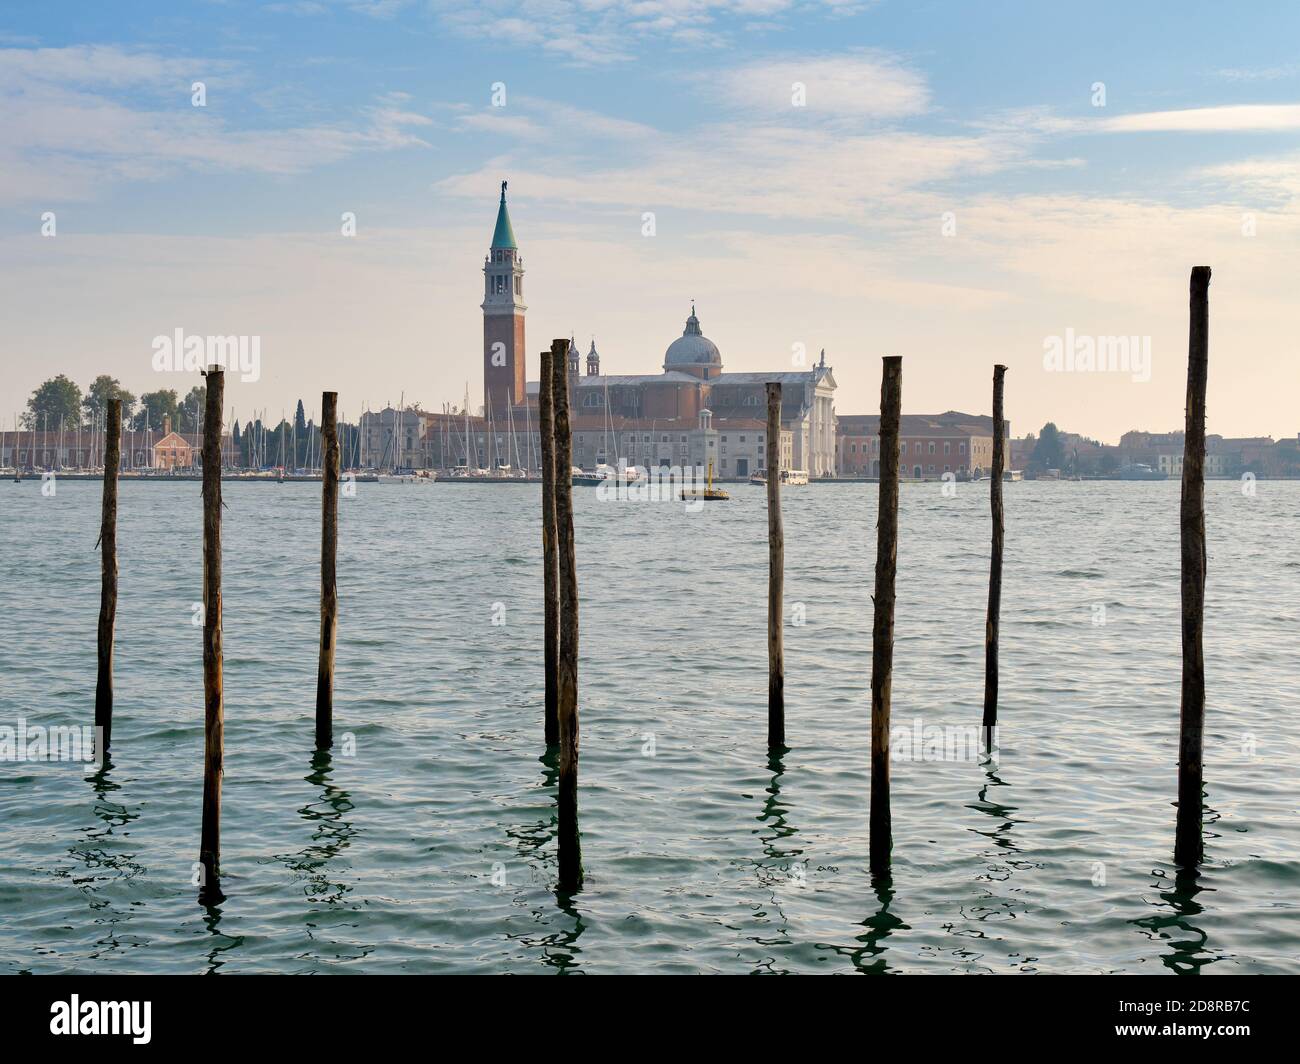 Immagine del Canal Grande e dell'isola di San Giorgio maggiore sullo sfondo, Venezia, Italia Foto Stock